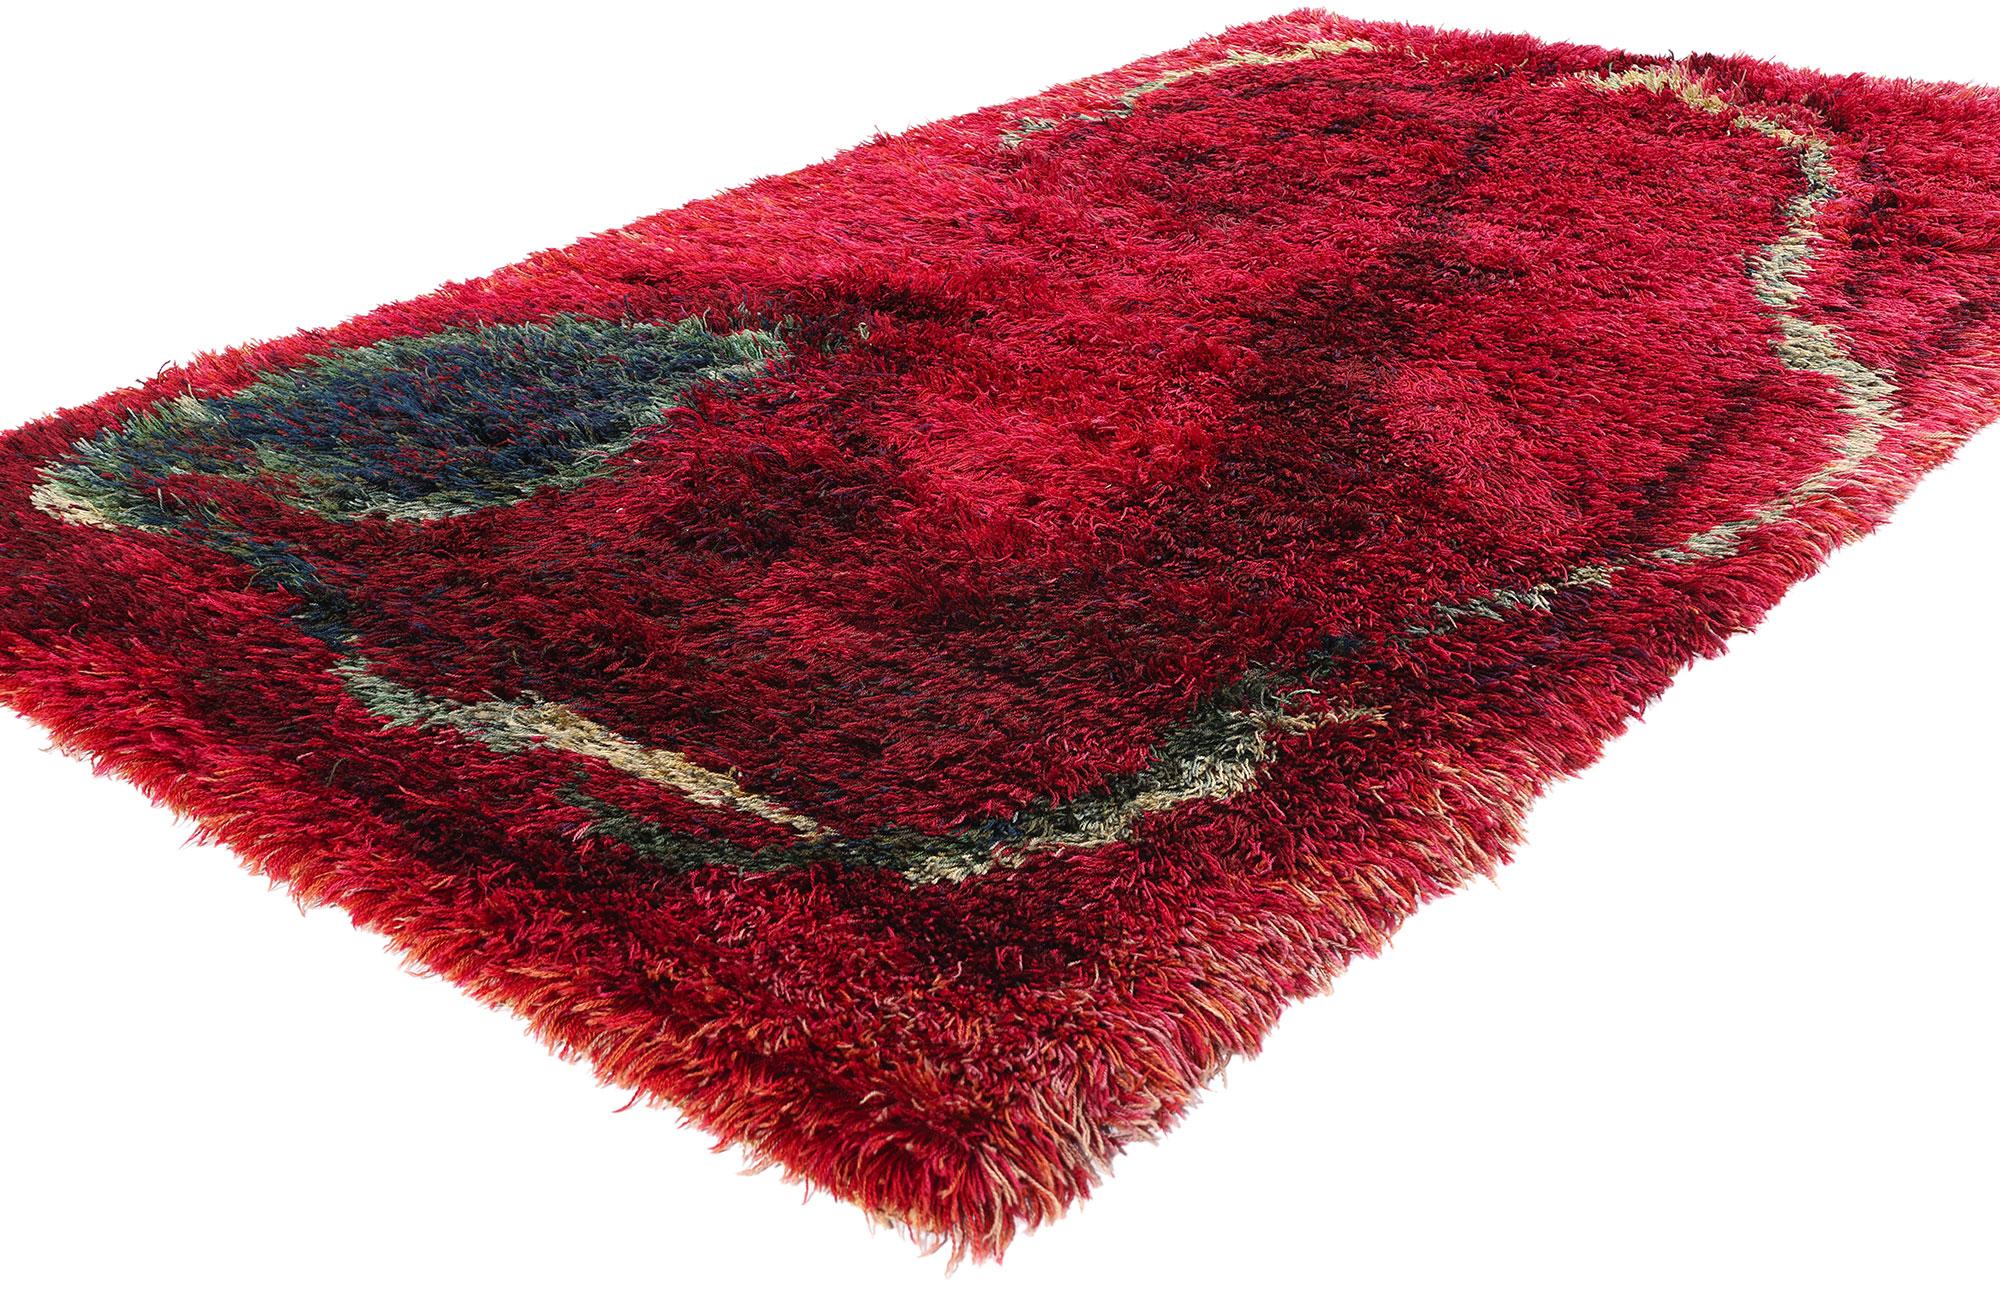 78474 Vintage Swedish Rya Rug, 04'10 x 07'09. Ein traditioneller schwedischer Rya-Teppich, der aus Schweden stammt, zeichnet sich durch seinen langen Flor aus, der typischerweise aus Wolle hergestellt wird und eine spezielle Knüpftechnik aufweist,